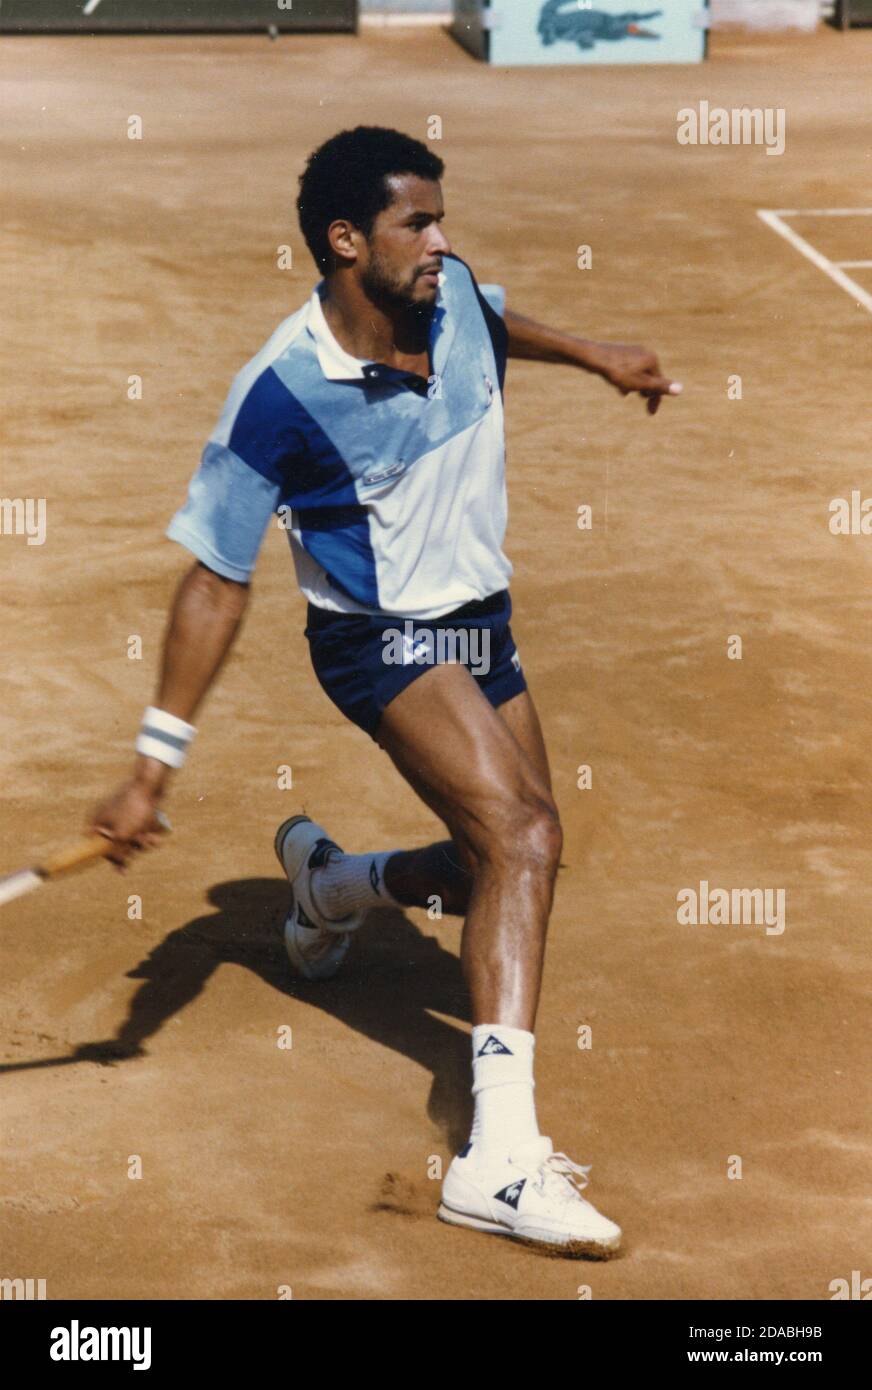 Yannick noah tennis Banque de photographies et d'images à haute résolution  - Alamy